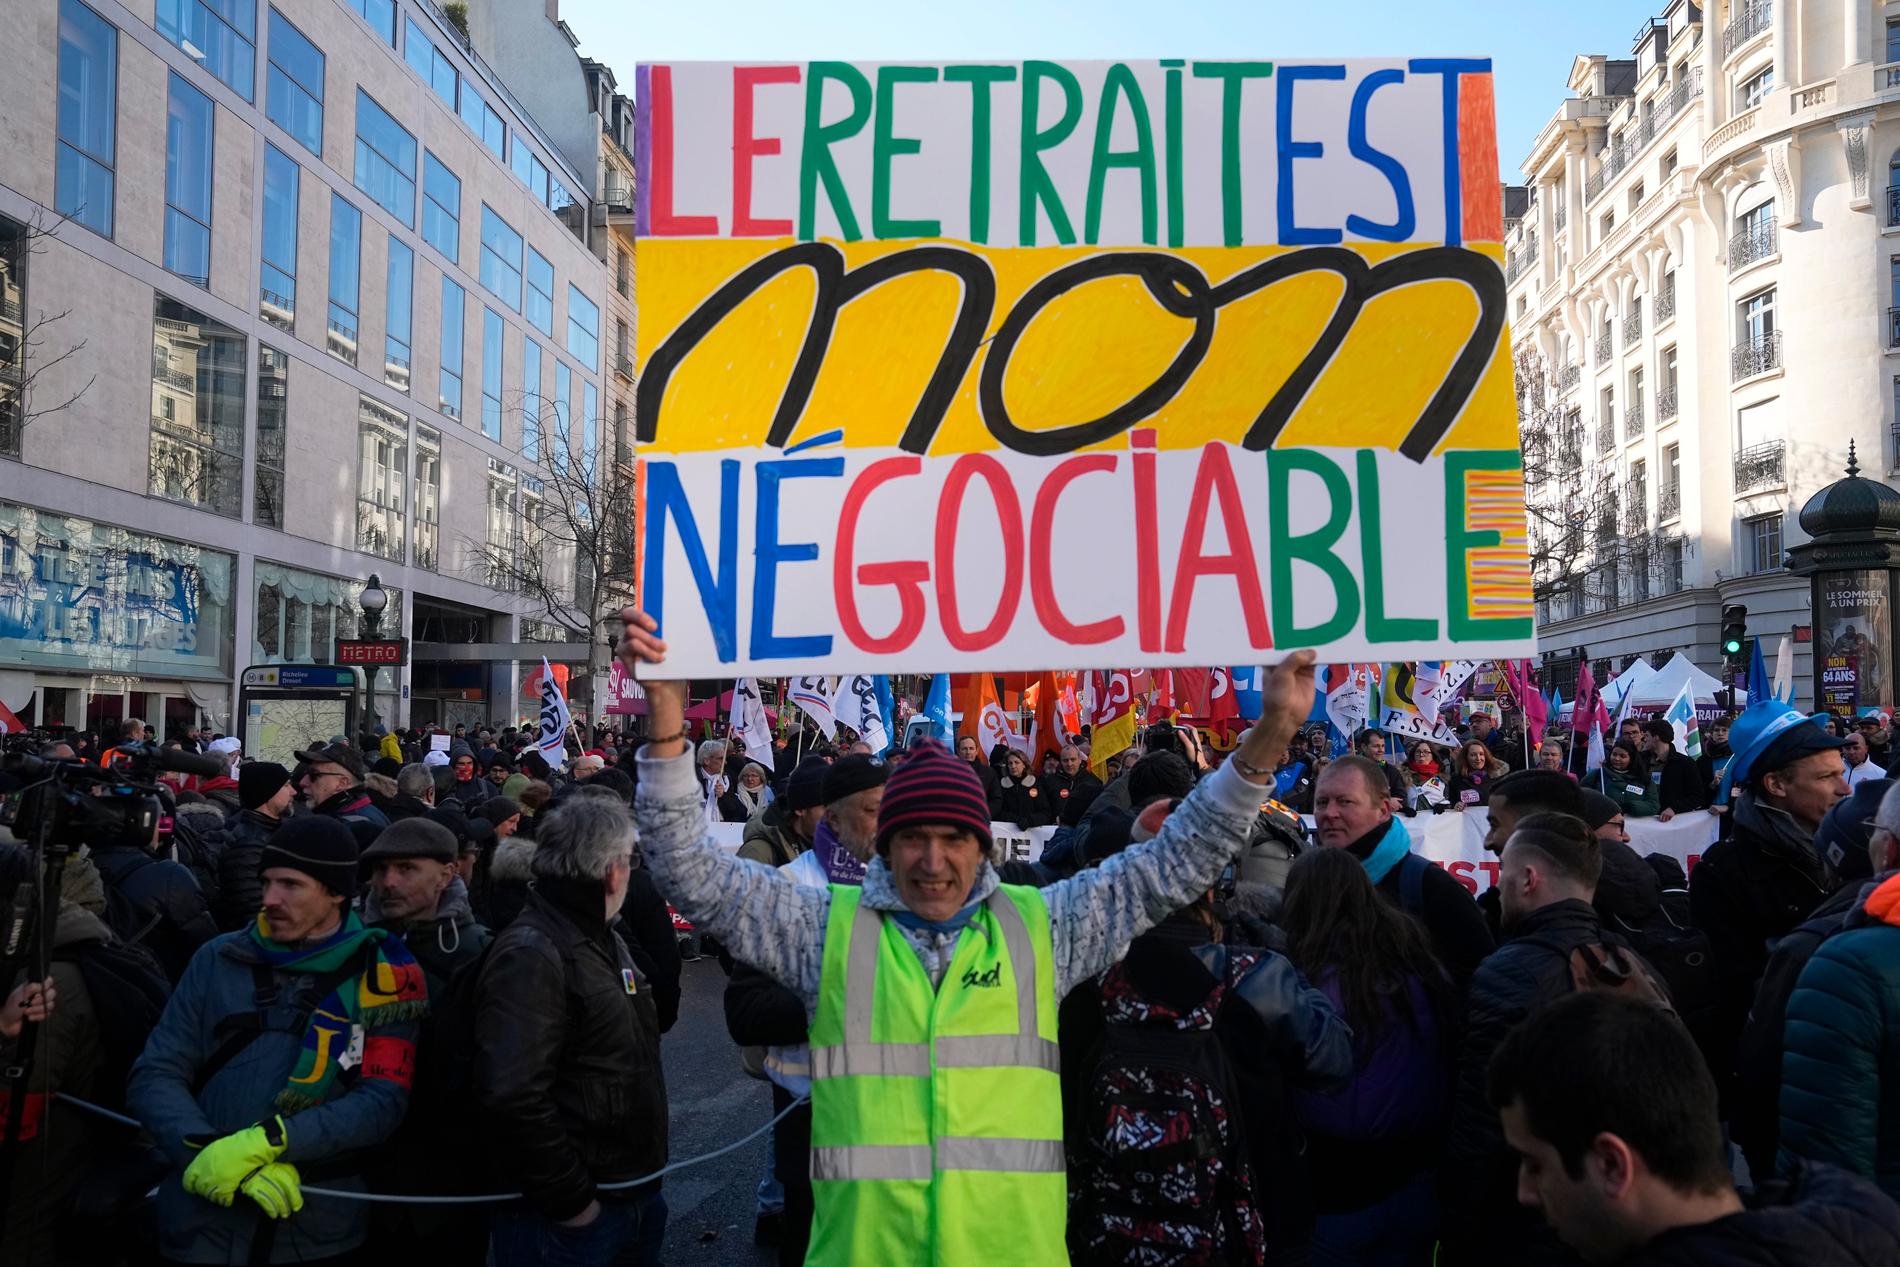 ”Pensionen är inte förhandlingsbar” står det på mannens skylt under en demonstration i Paris i tisdags, 7 februari.